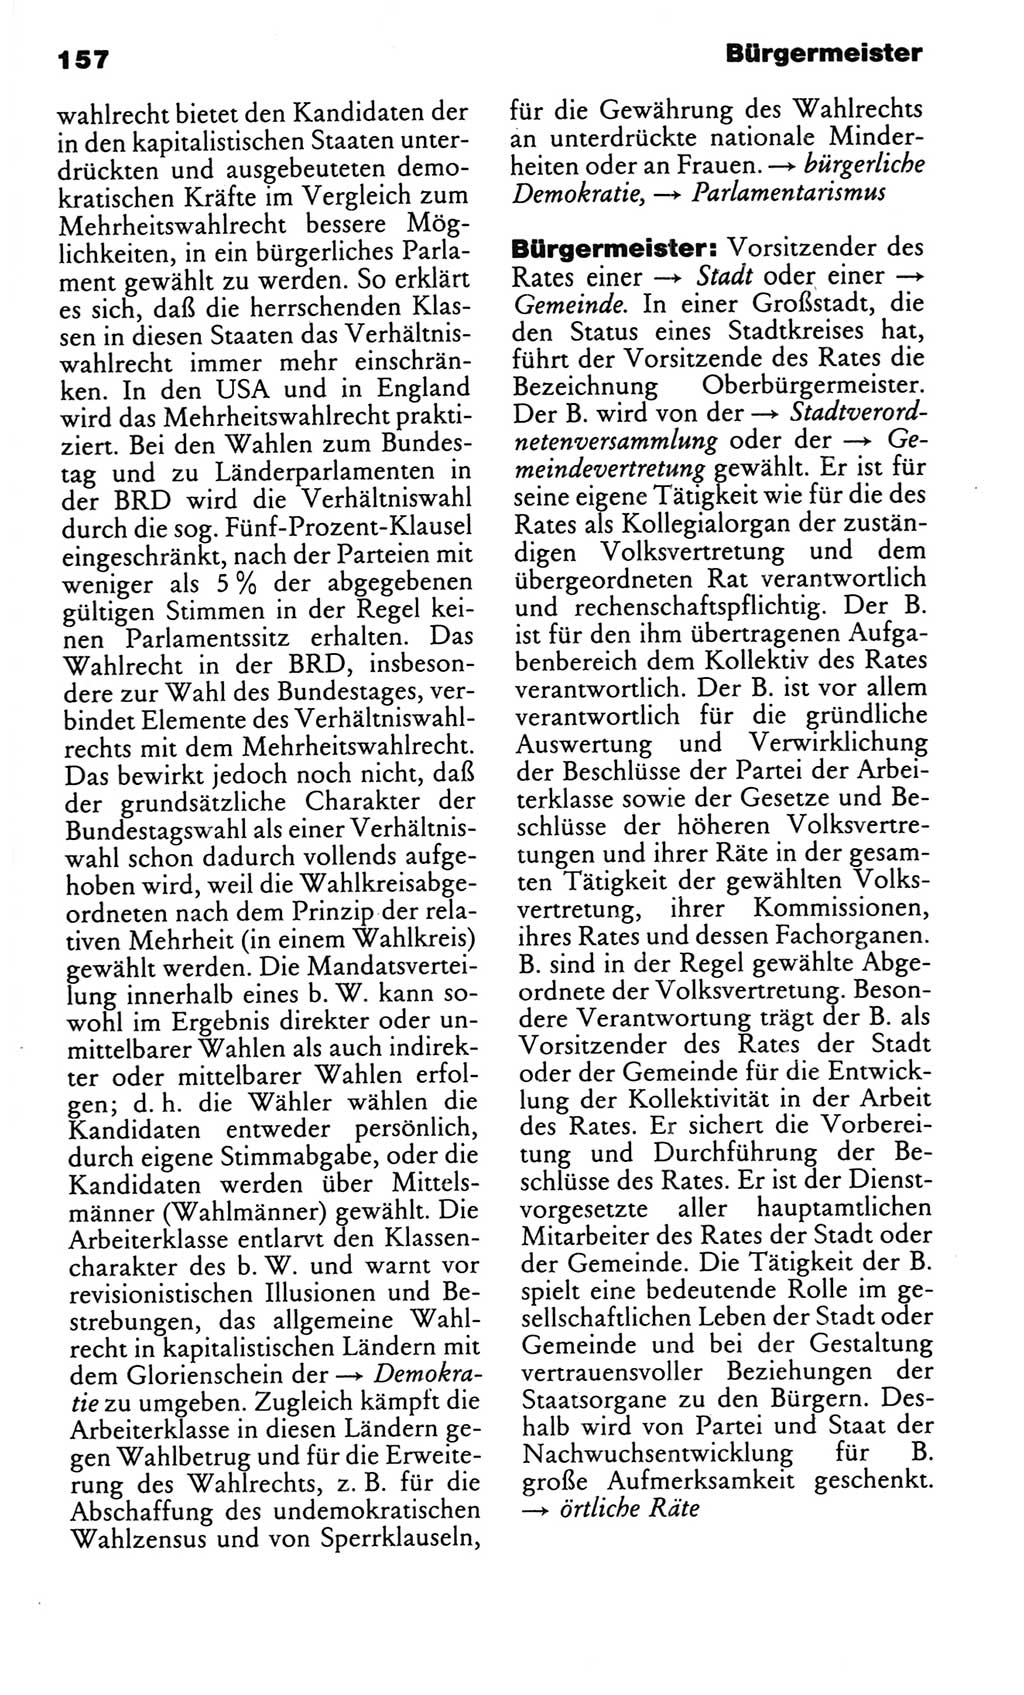 Kleines politisches Wörterbuch [Deutsche Demokratische Republik (DDR)] 1985, Seite 157 (Kl. pol. Wb. DDR 1985, S. 157)